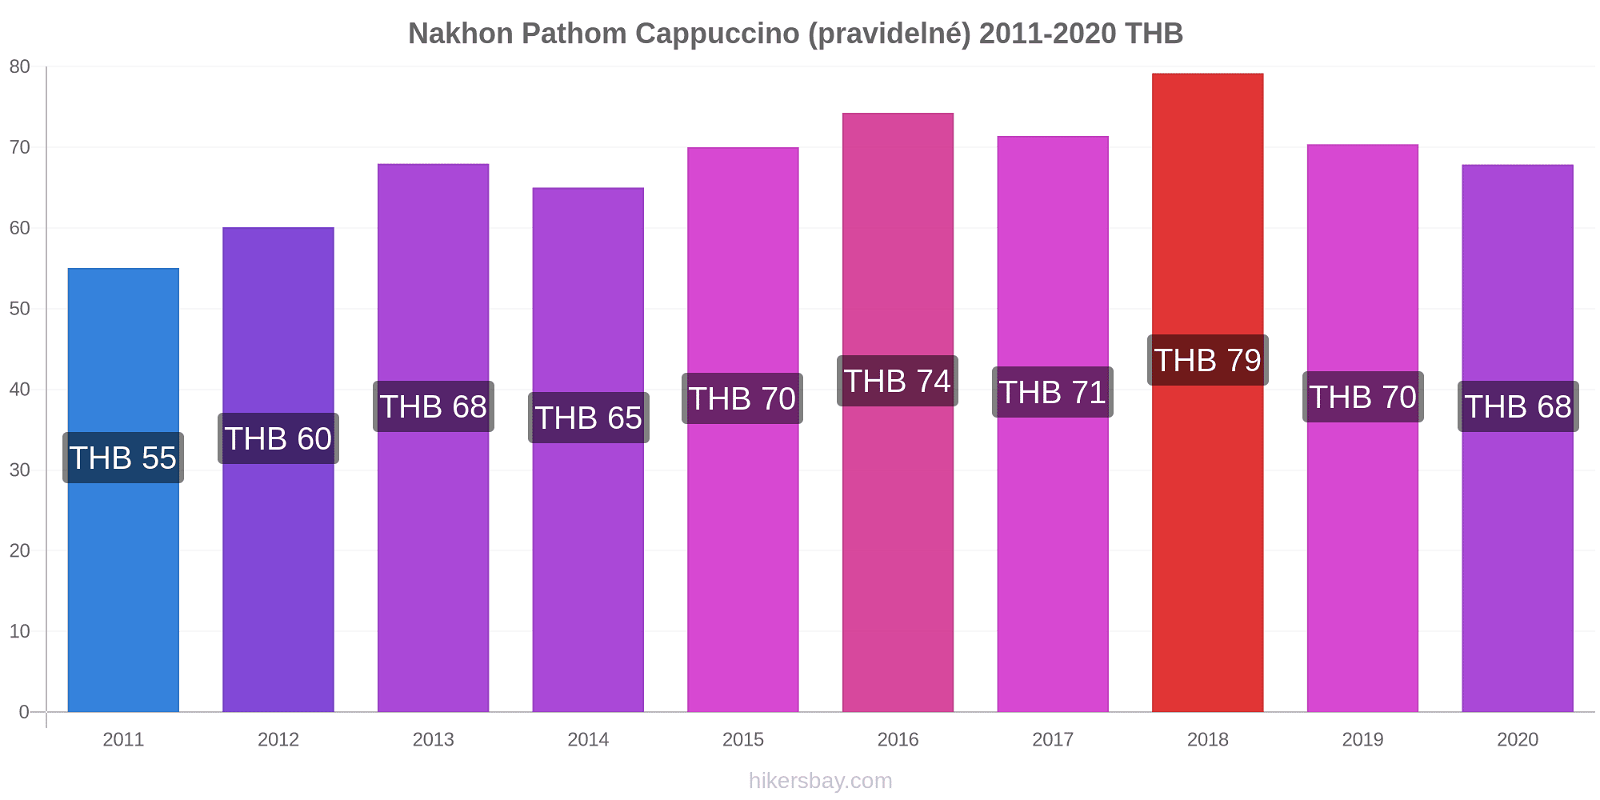 Nakhon Pathom změny cen Cappuccino (pravidelné) hikersbay.com